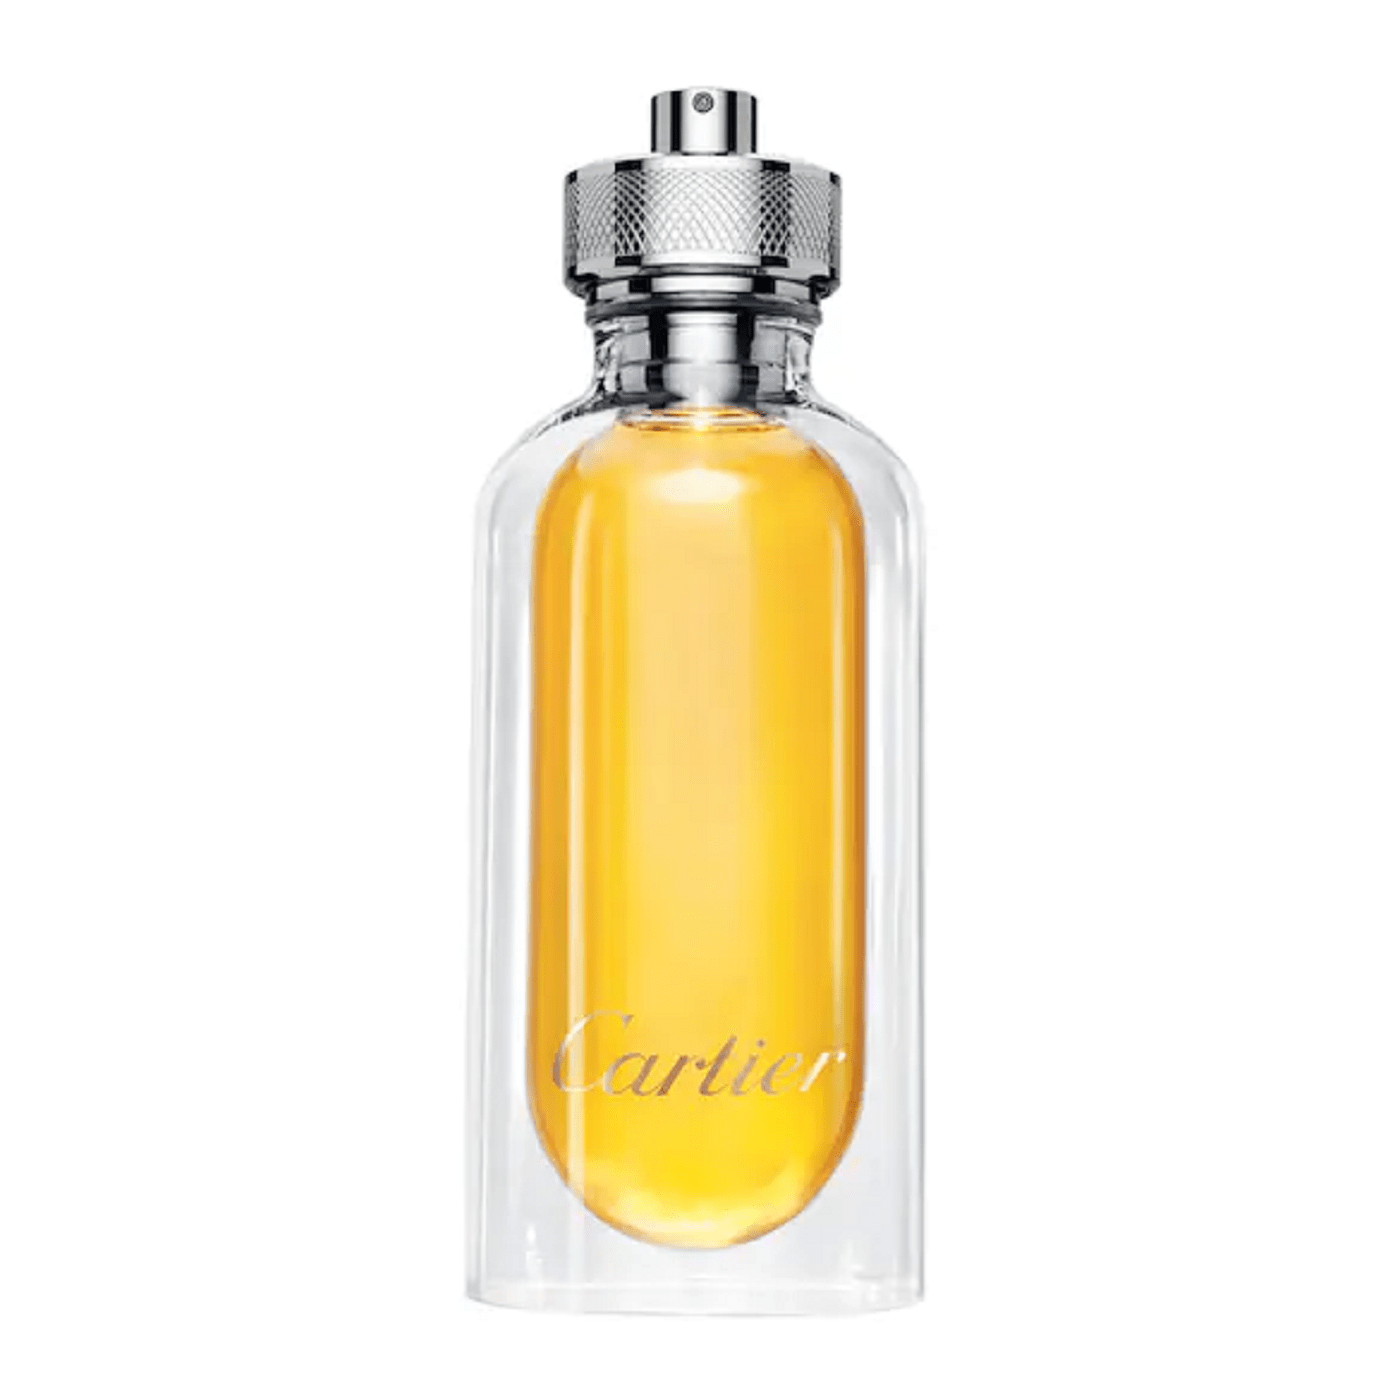 Cartier-l-envol-eau-de-parfum-in-uae